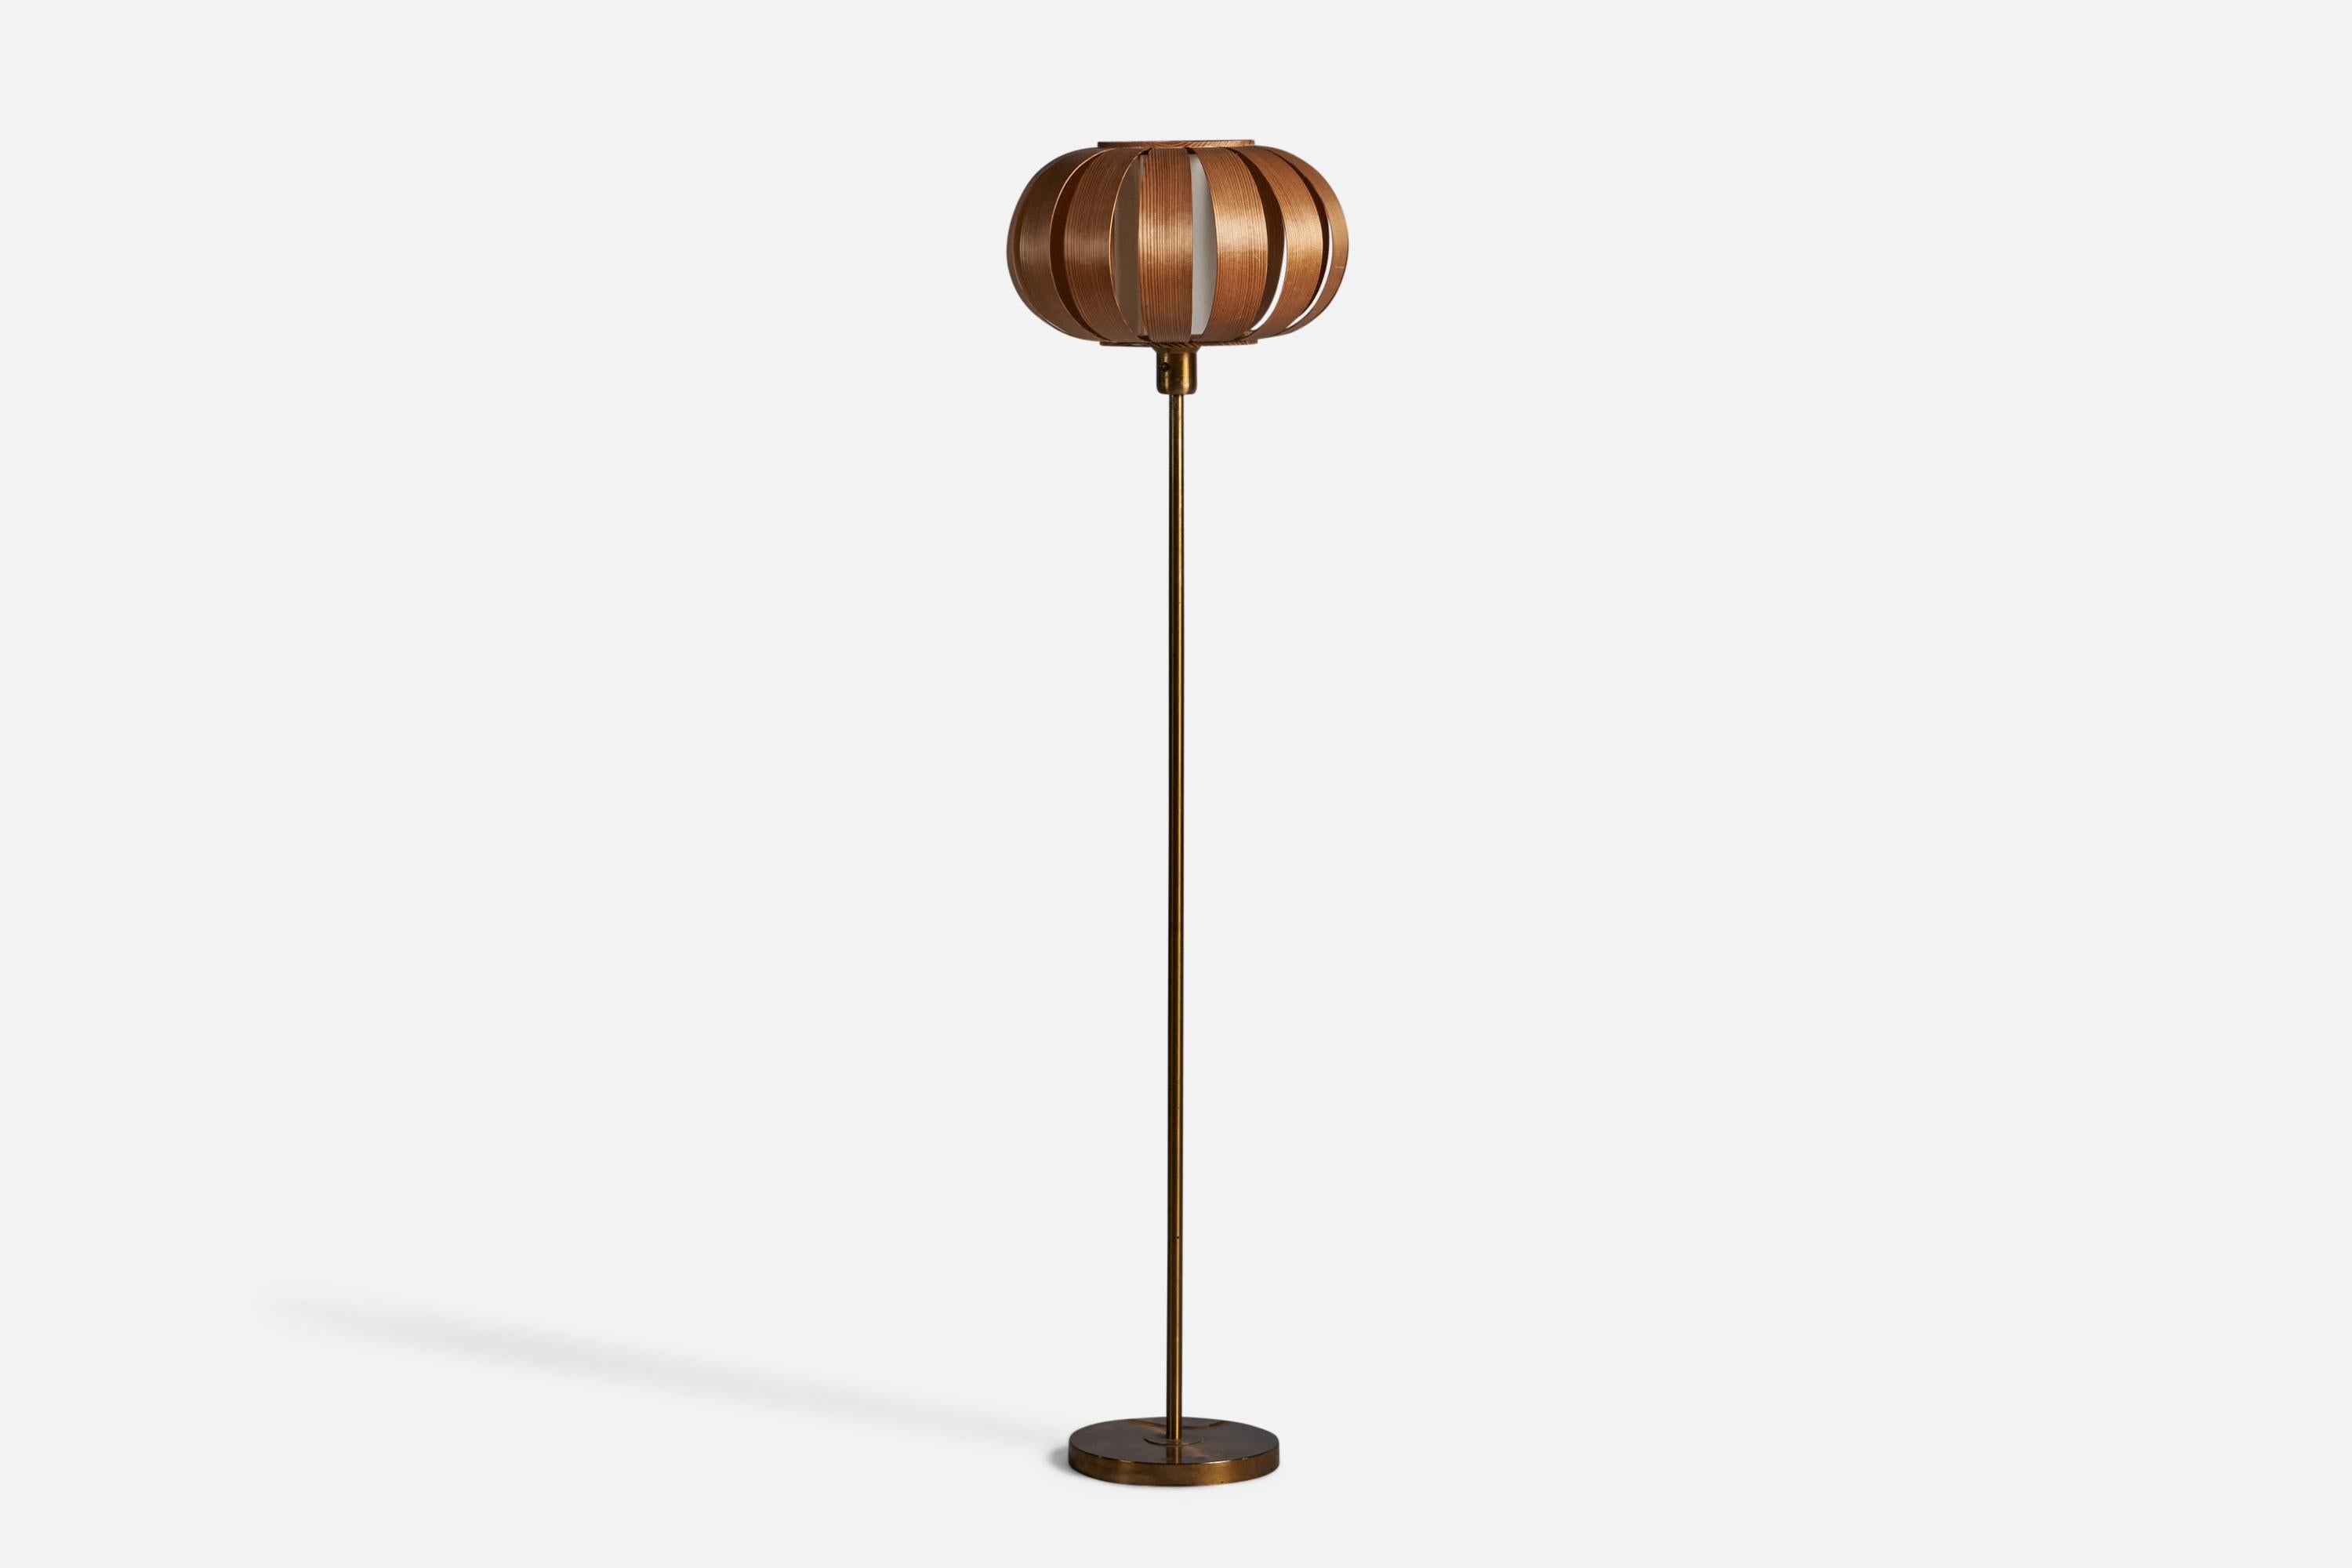 Stehlampe aus Messing, Kiefer, geformtem Kiefernholz und Stoff, entworfen und hergestellt in Schweden, 1960er Jahre.

Gesamtabmessungen (Zoll): 53